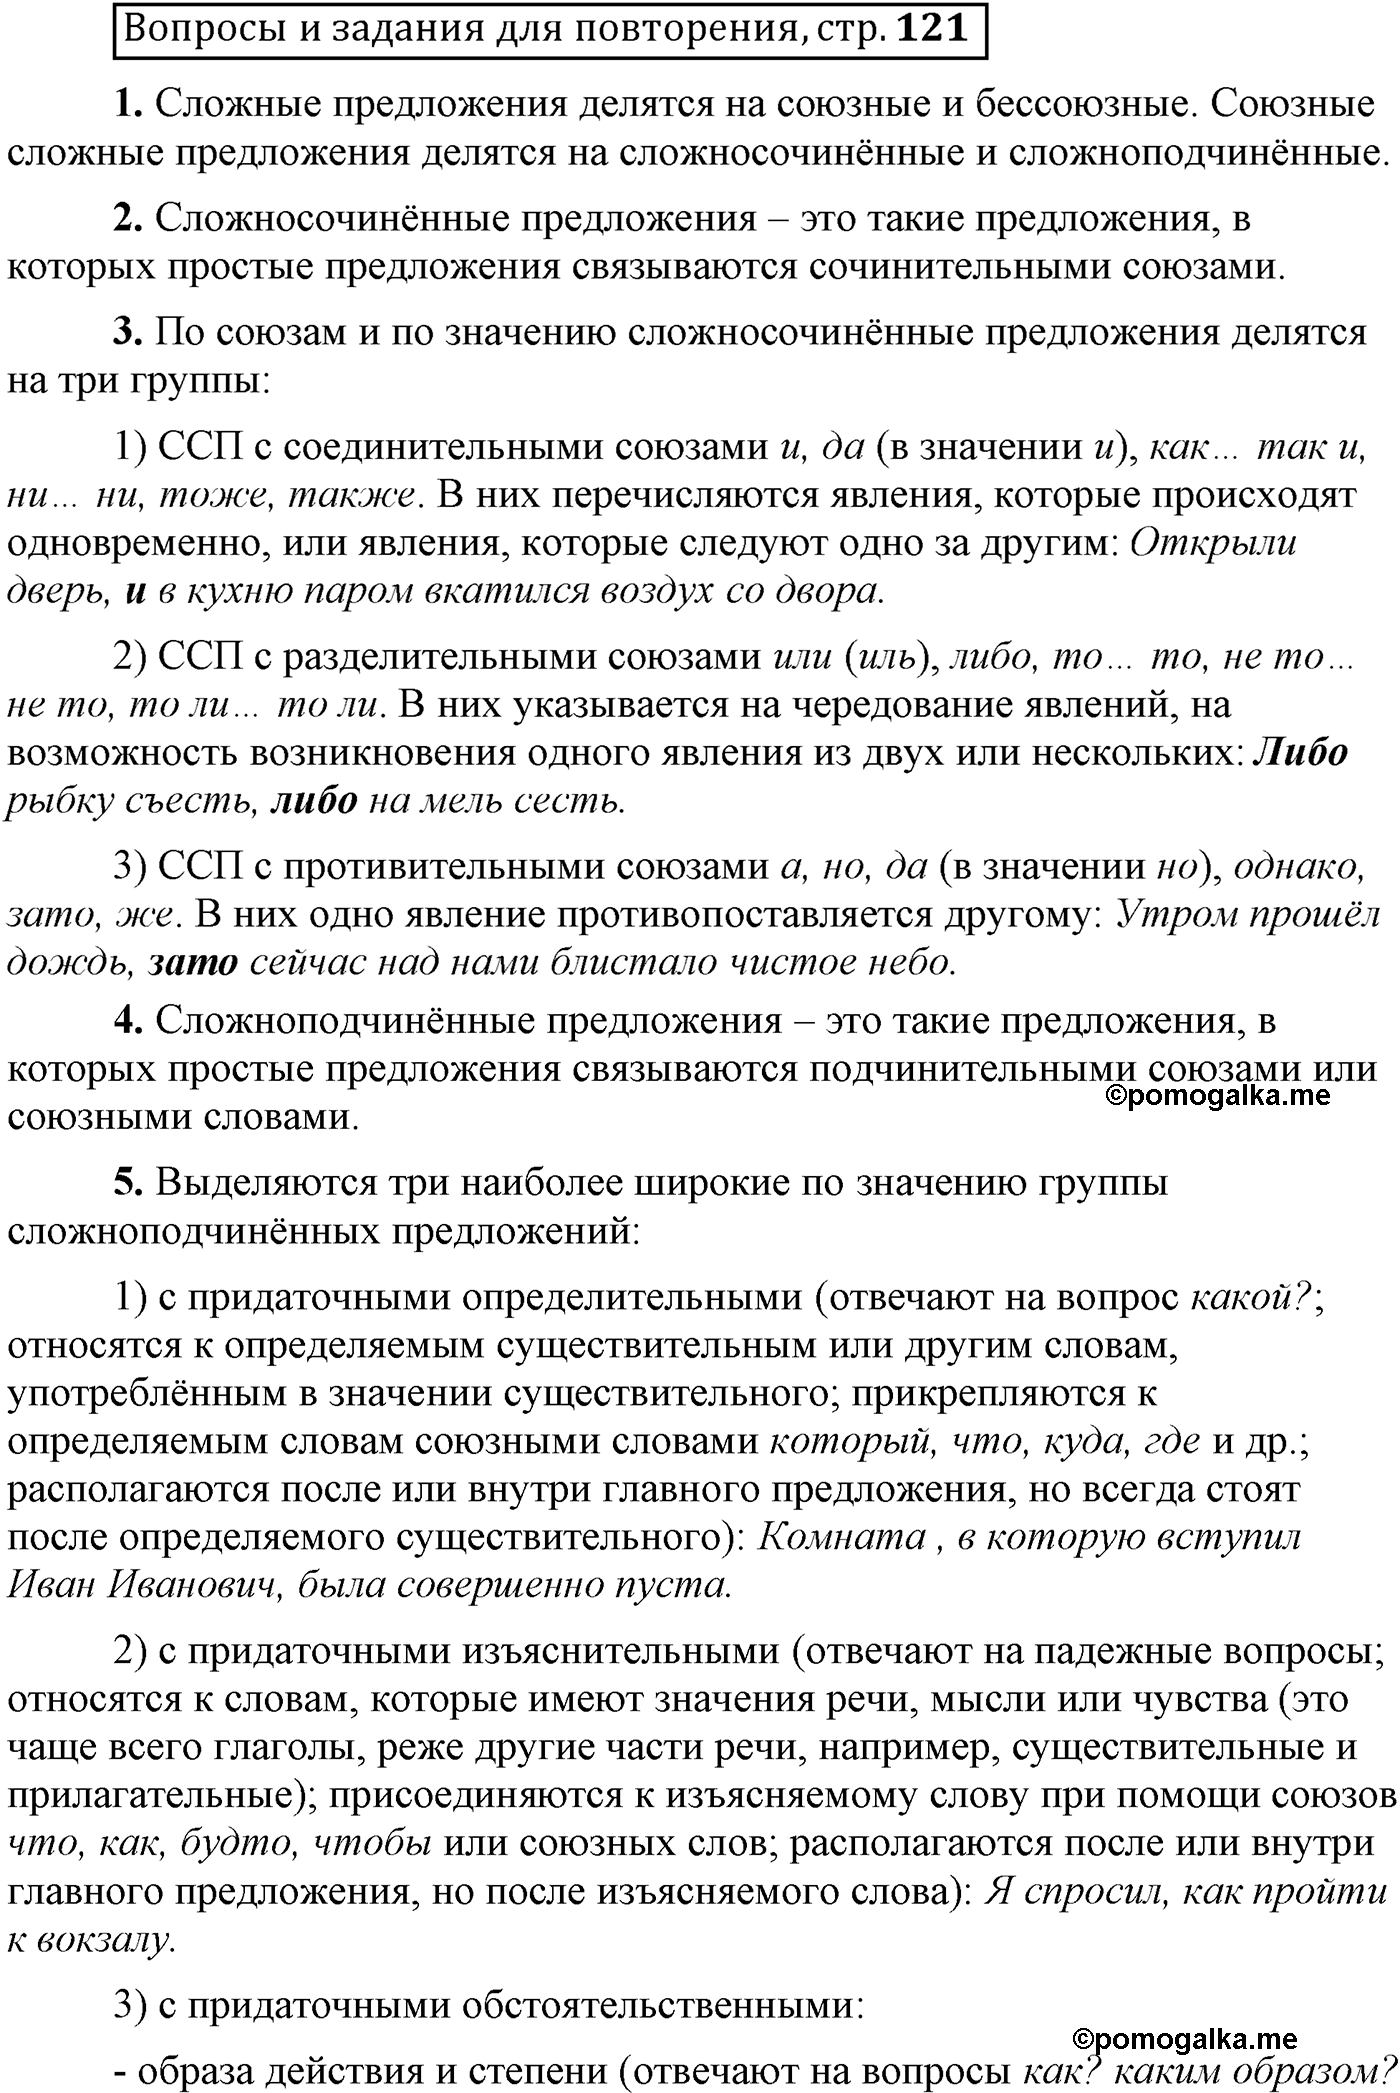 Вопросы и задания для повторения, страница 121 русский язык 9 класс Бархударов, Крючков, Максимов, Чешко, Николина